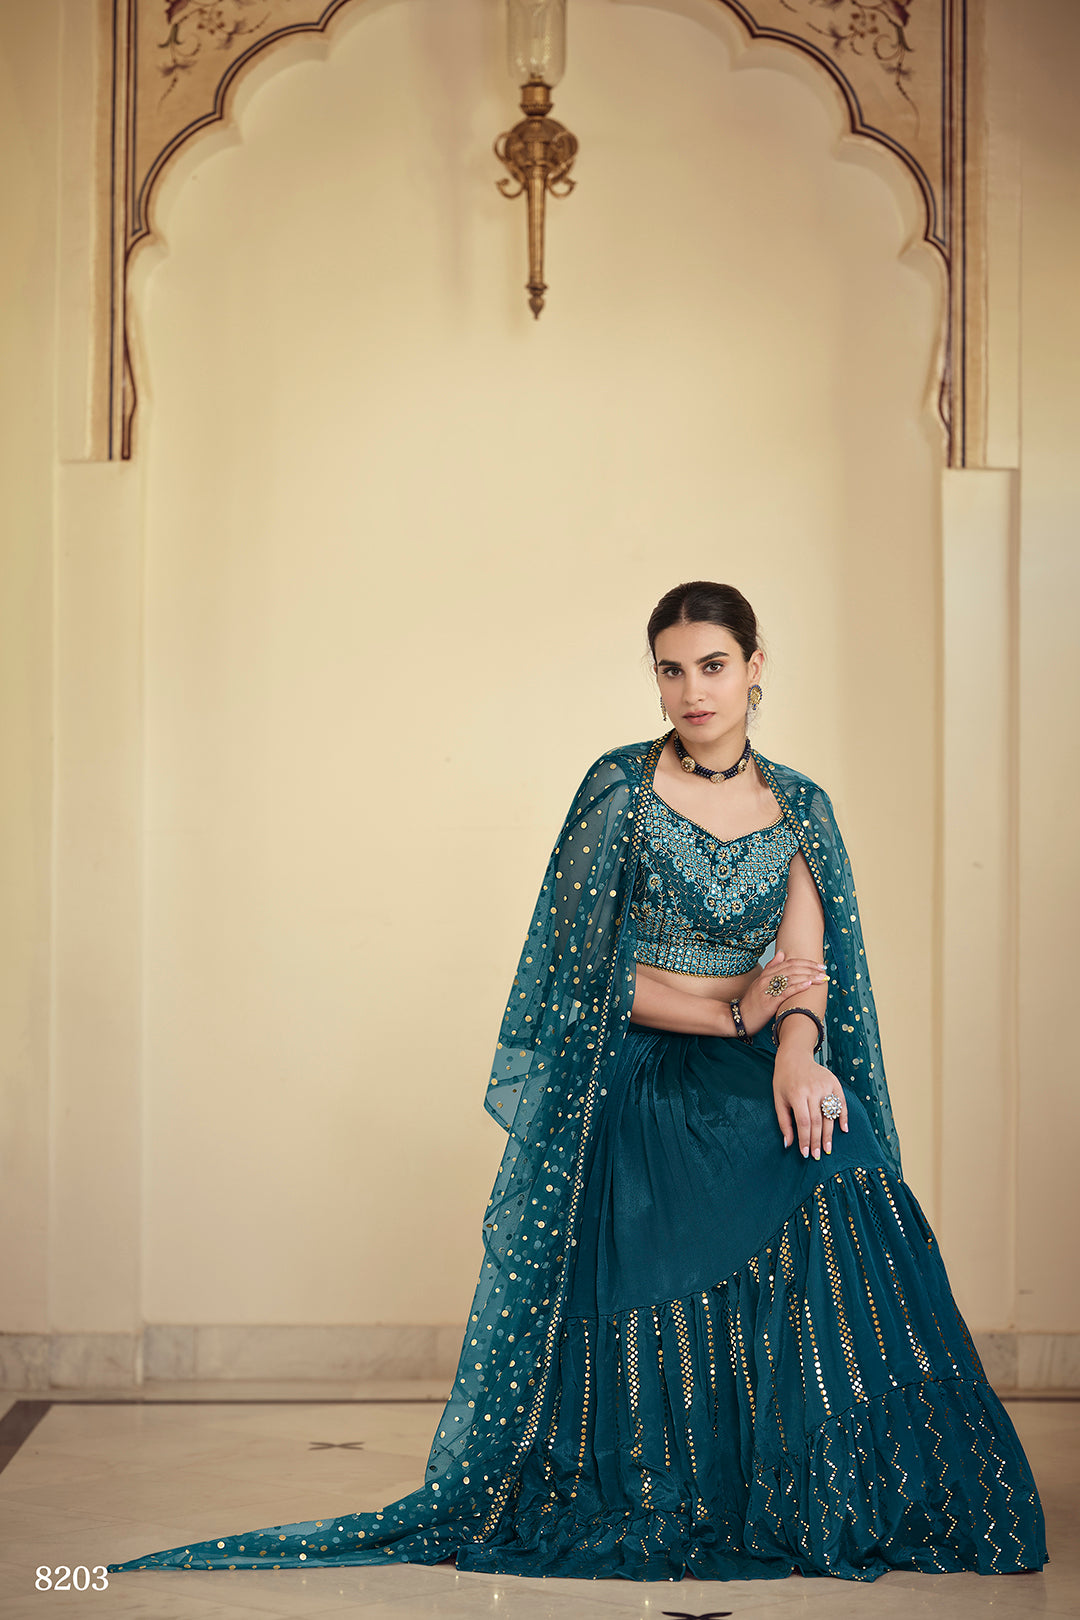 Buy Impressive Black Banarasi Indo-western Crop Top Lehenga, Bridesmaid  Dress Online in India - Etsy | Simple lehenga, Long skirt and top, Lehenga  designs simple